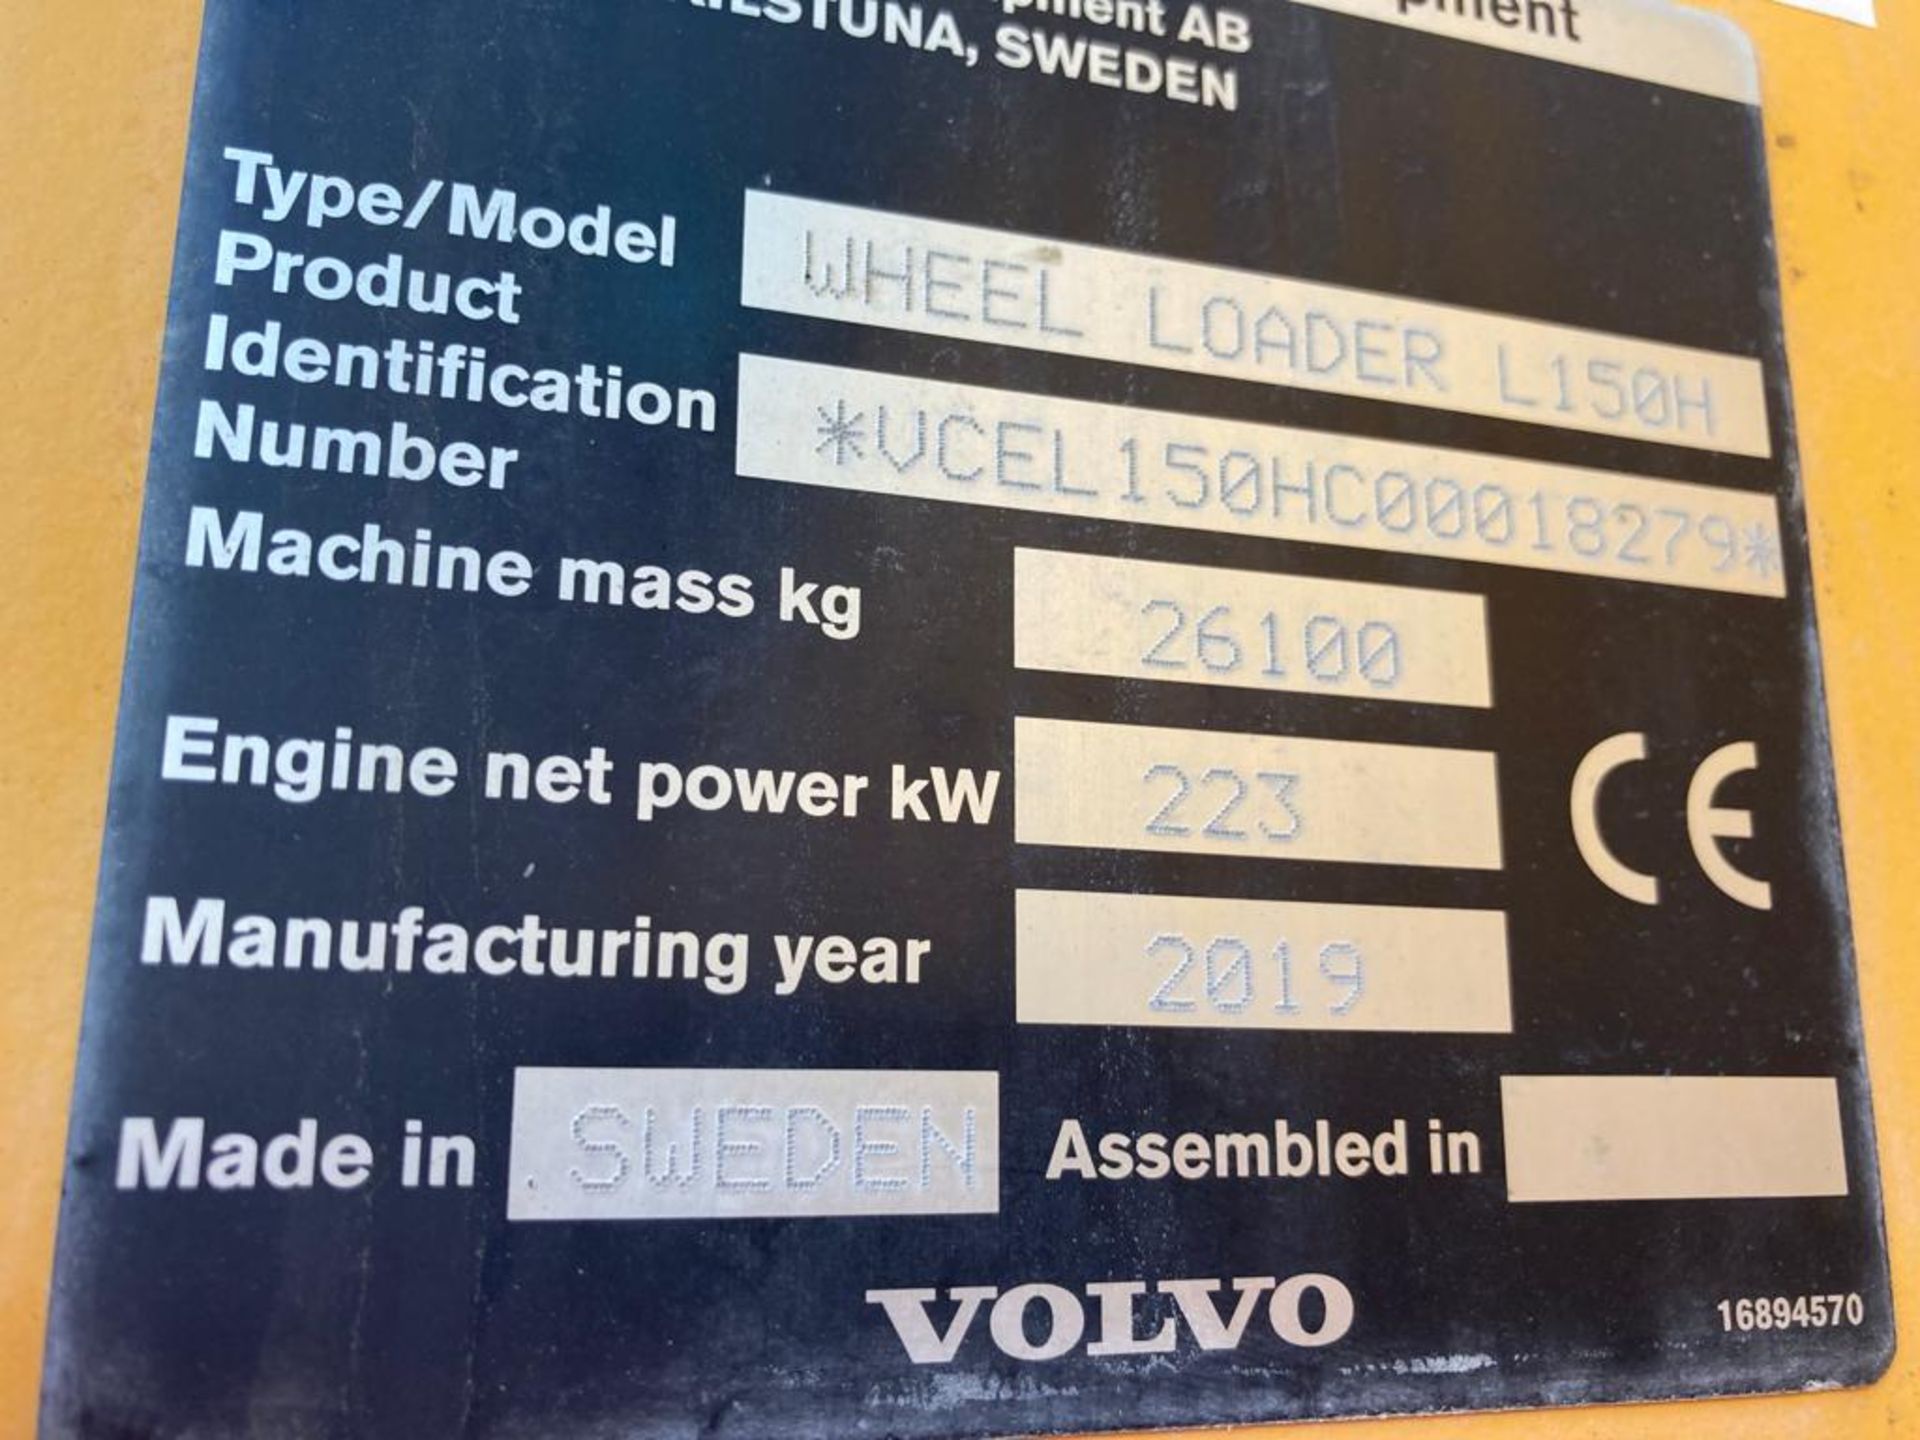 Direct from Volvo Main Dealer, 2019 (L150H#18279A) Wheel Loader - Bild 16 aus 23